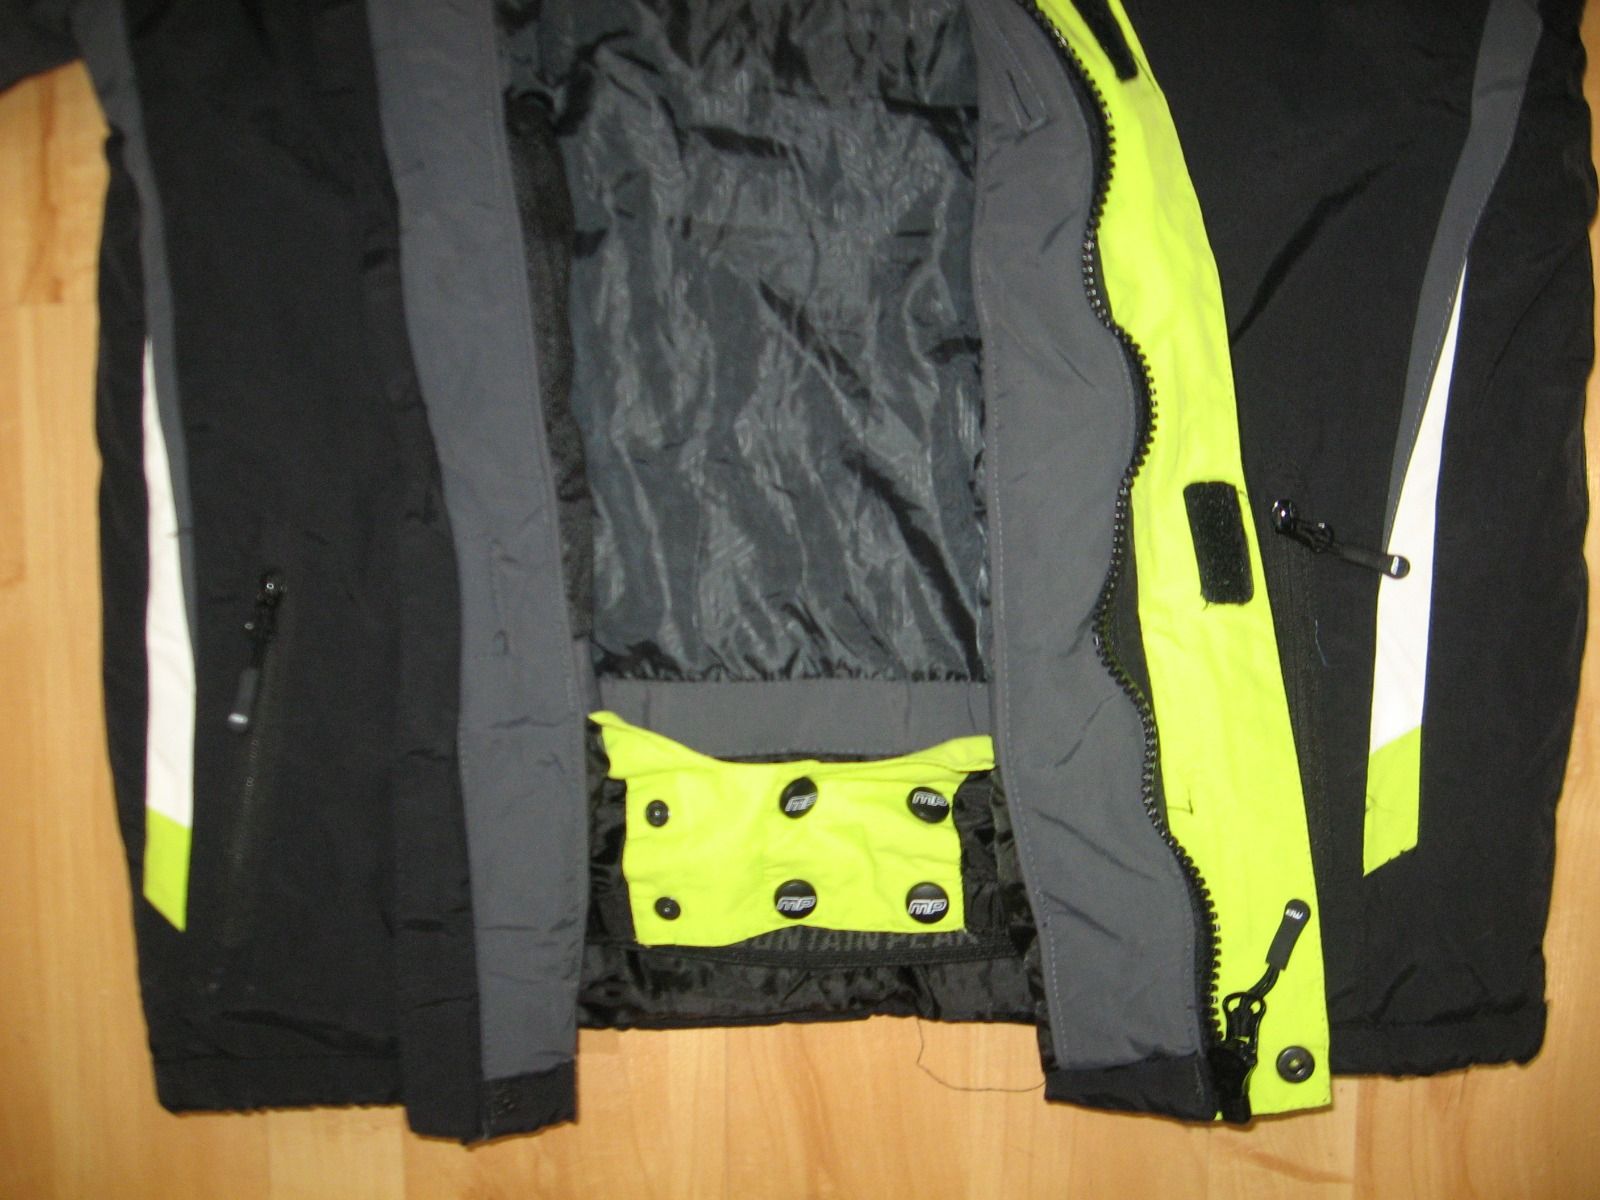 Мужская горнолыжная куртка Mountainpeak размер S/M